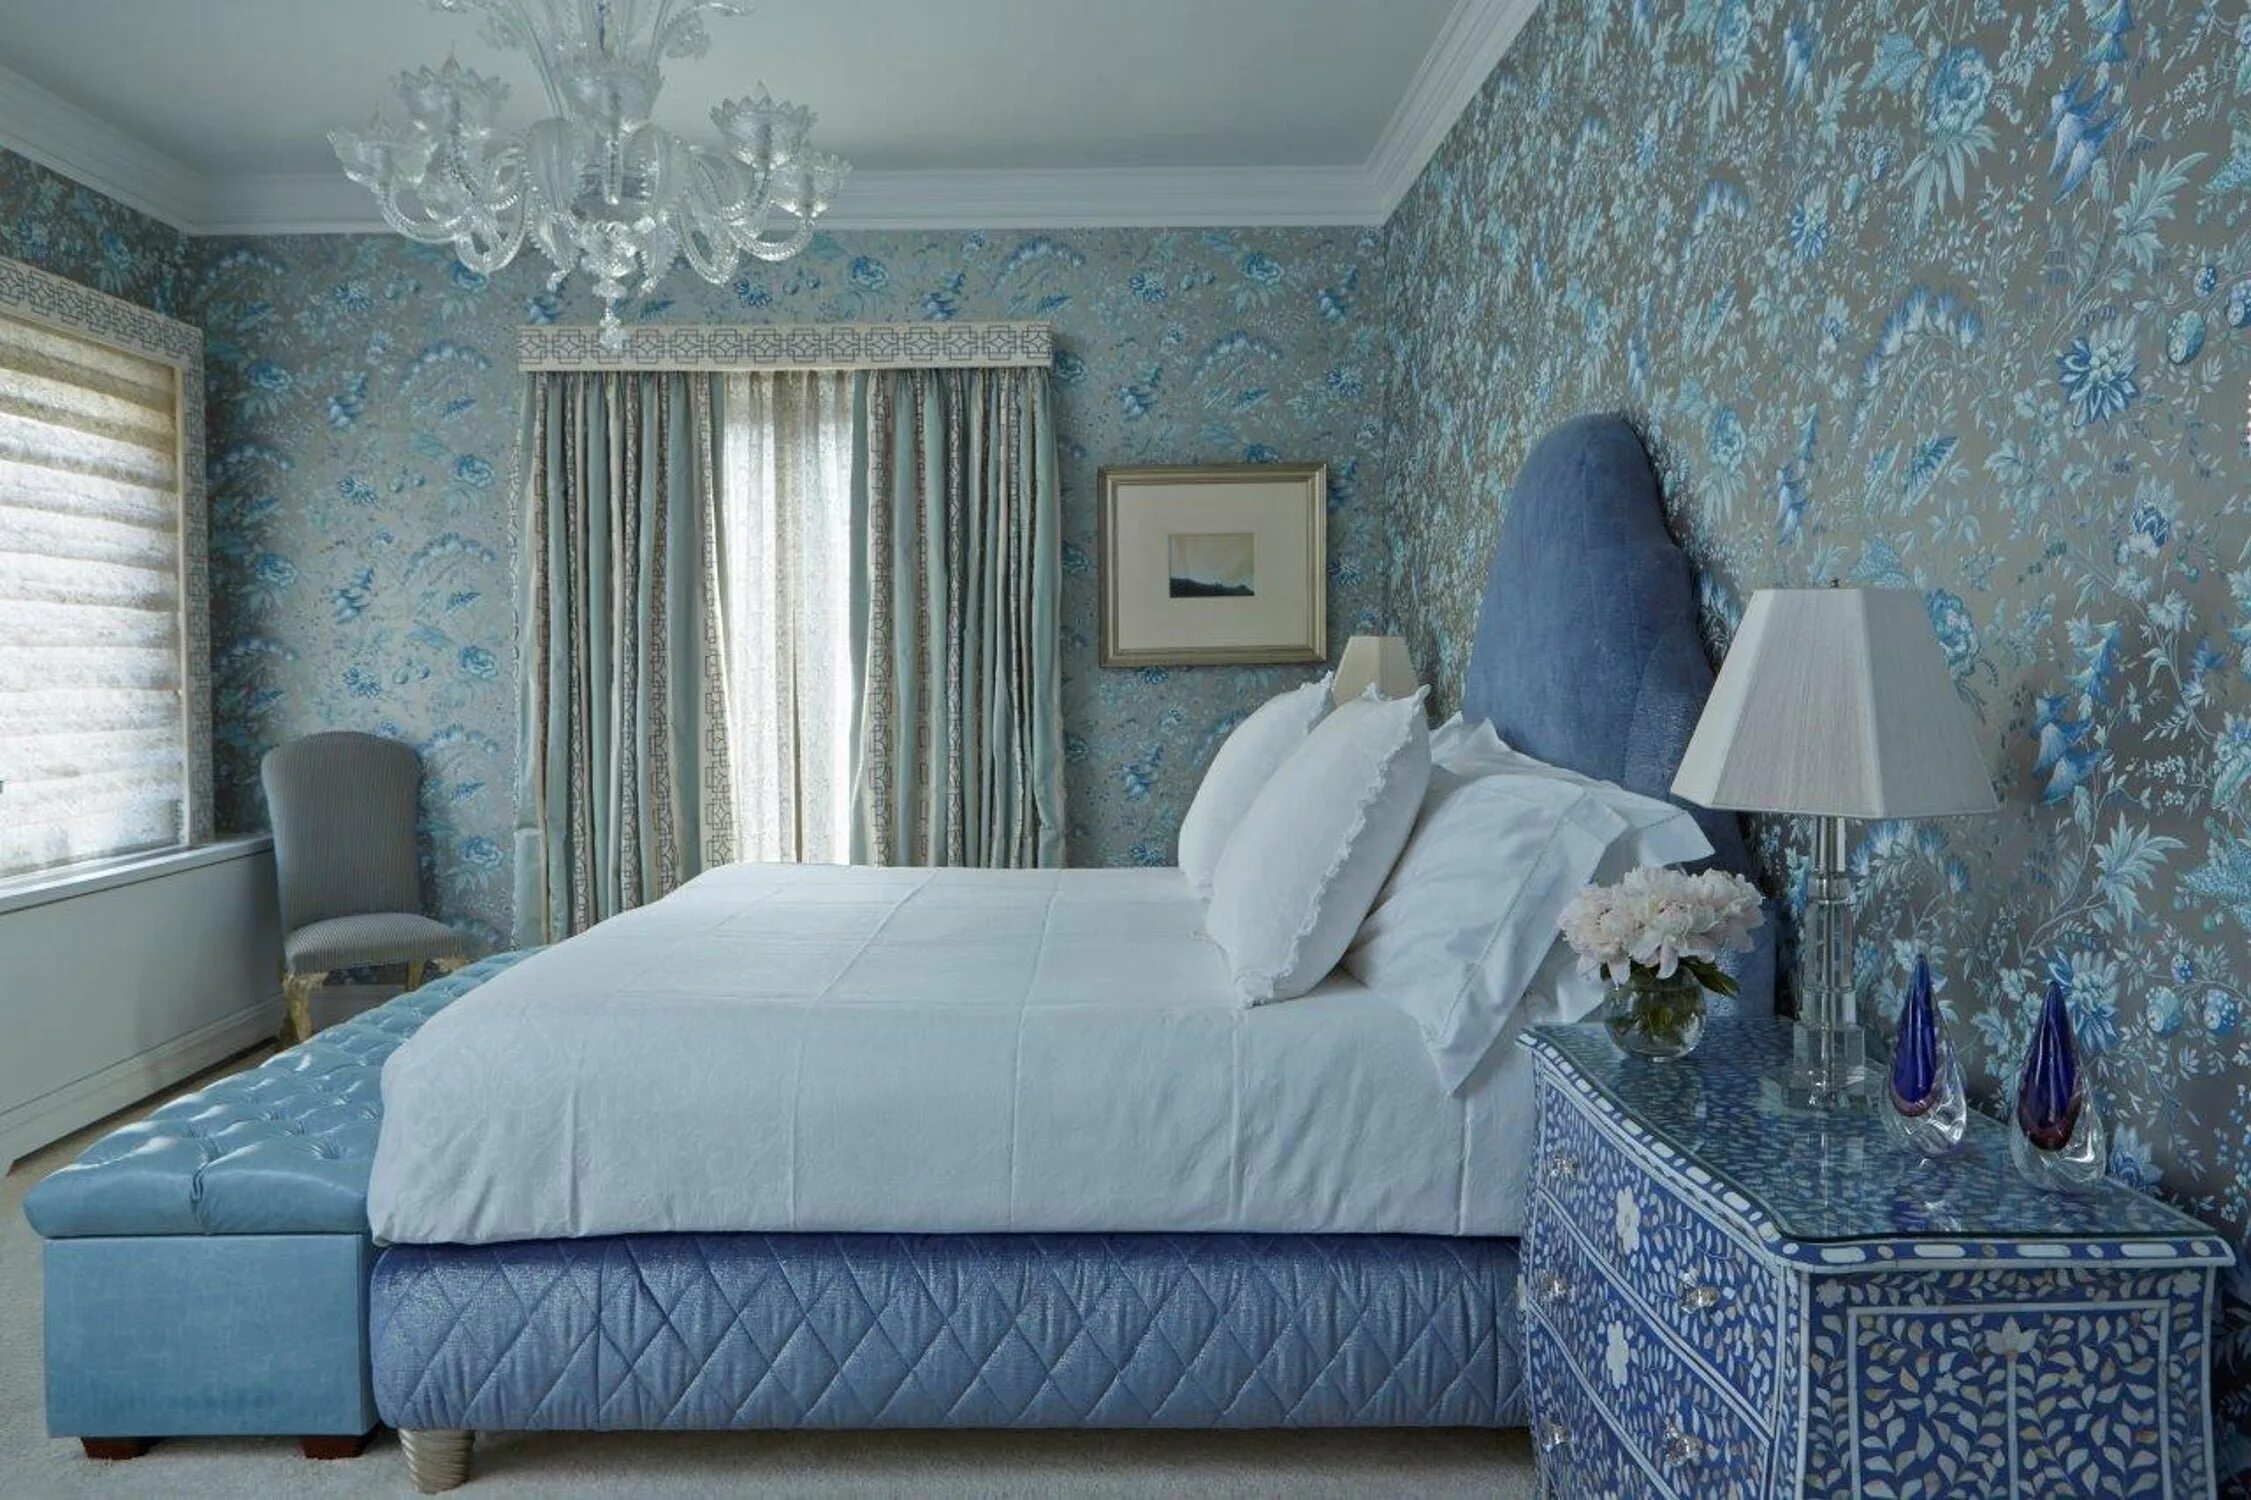 Выполнен в голубом цвете голубой. Спальня в бело голубых тонах. Спальня в синем цвете. Спальня в голубом цвете. Голубые обои в спальне.